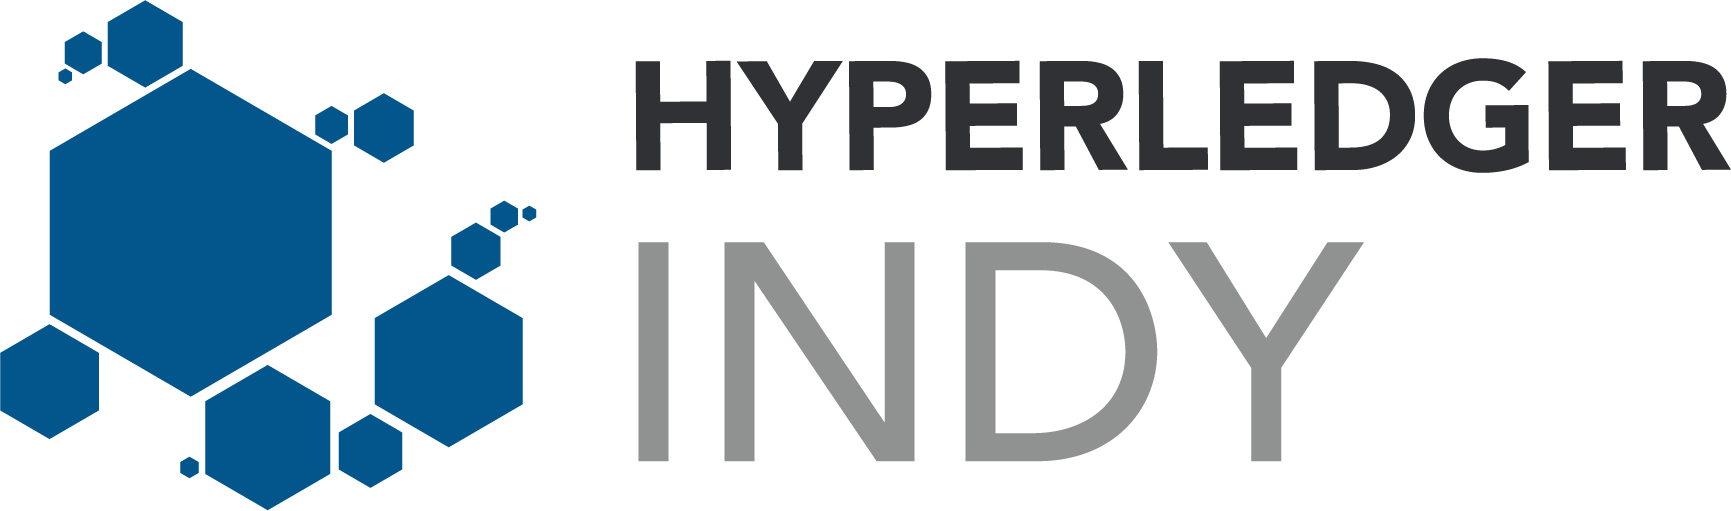 Hyperledger_Indy